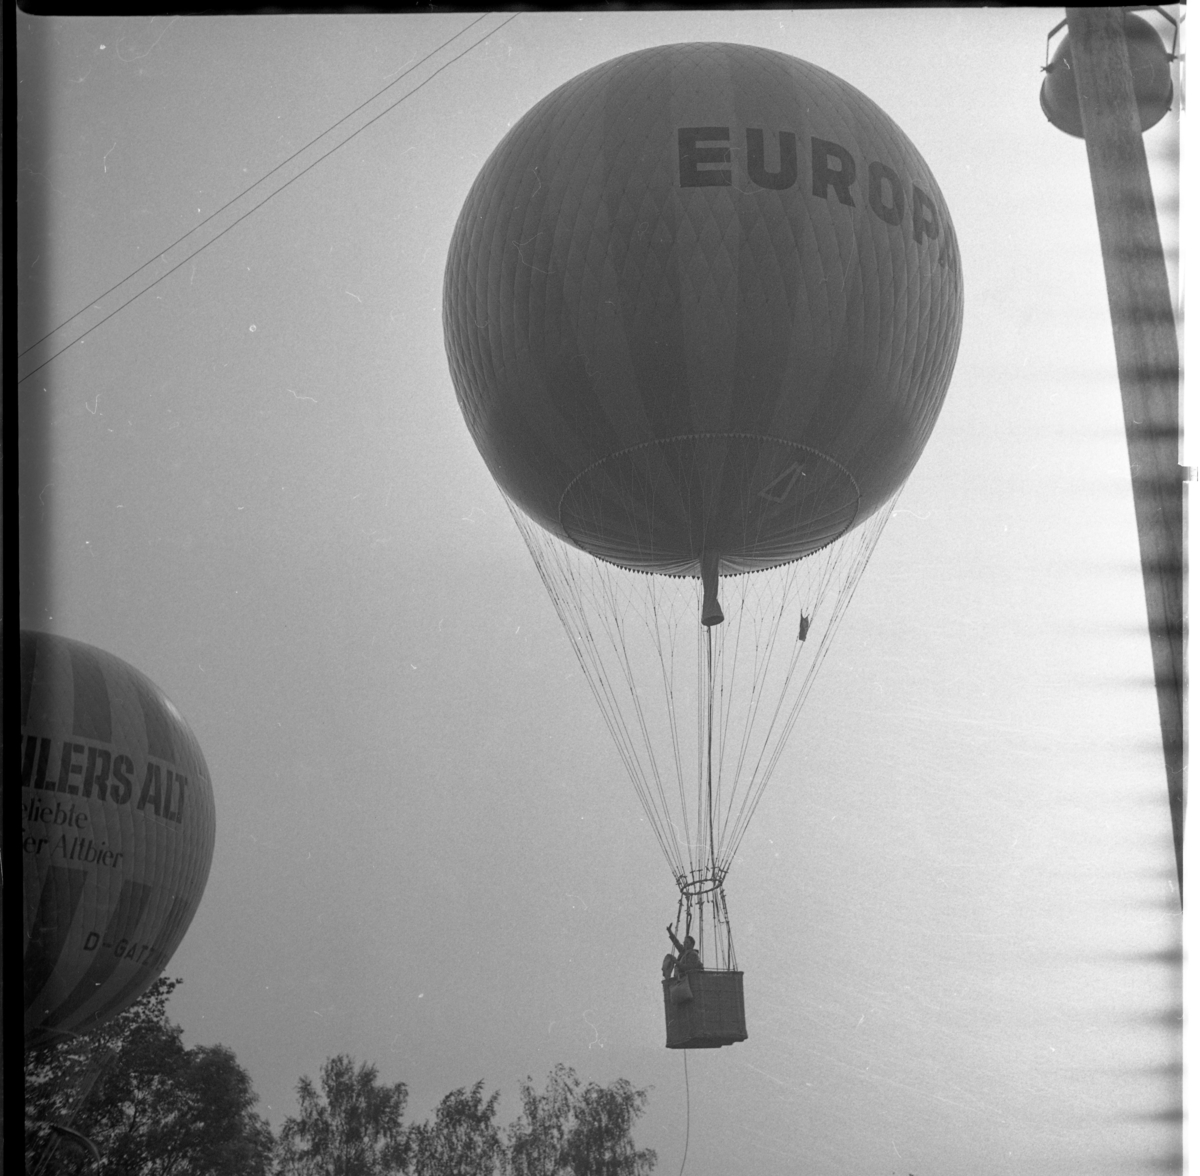 En gasballong märkt "Europa" i skyn.